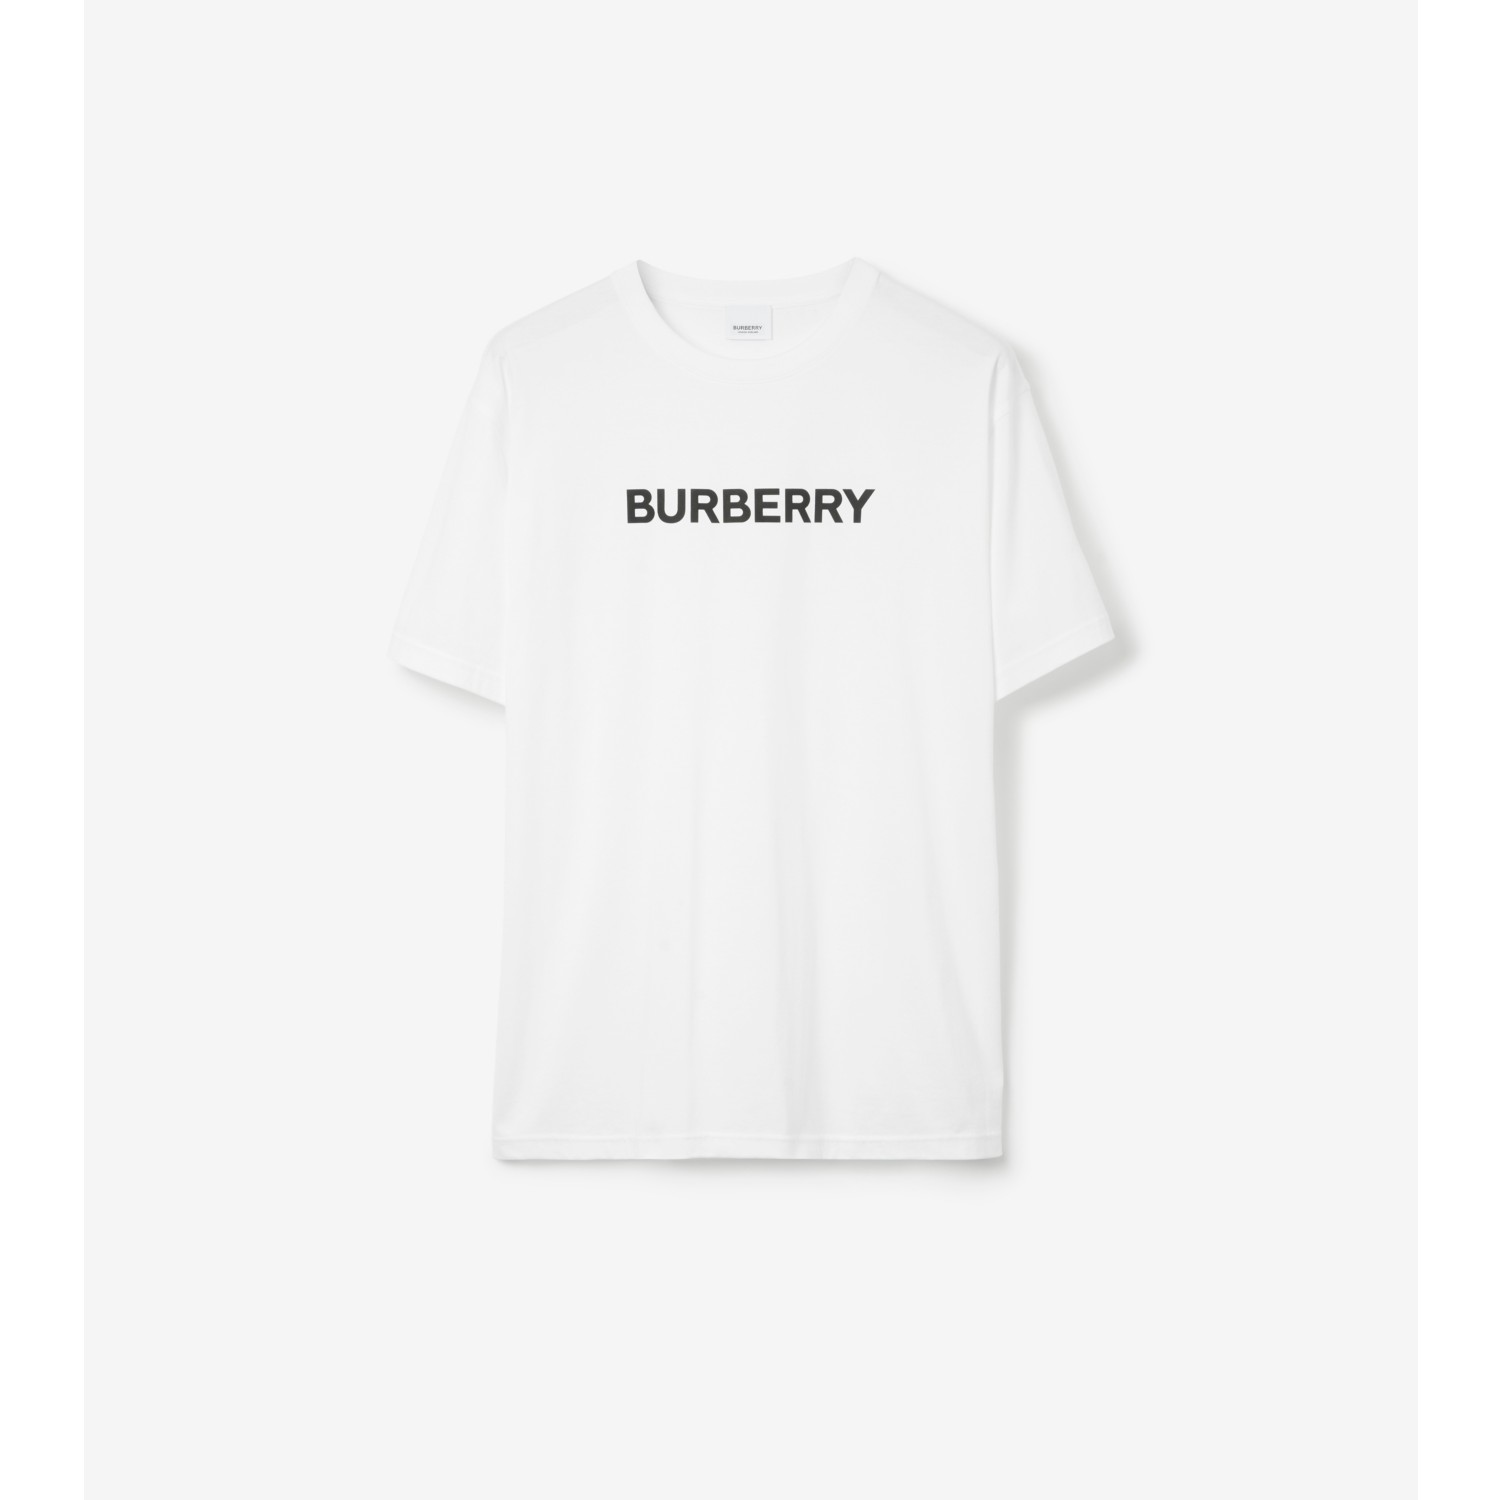 【週末限定値下げ】BURBURRY Tシャツ宜しくお願い致します